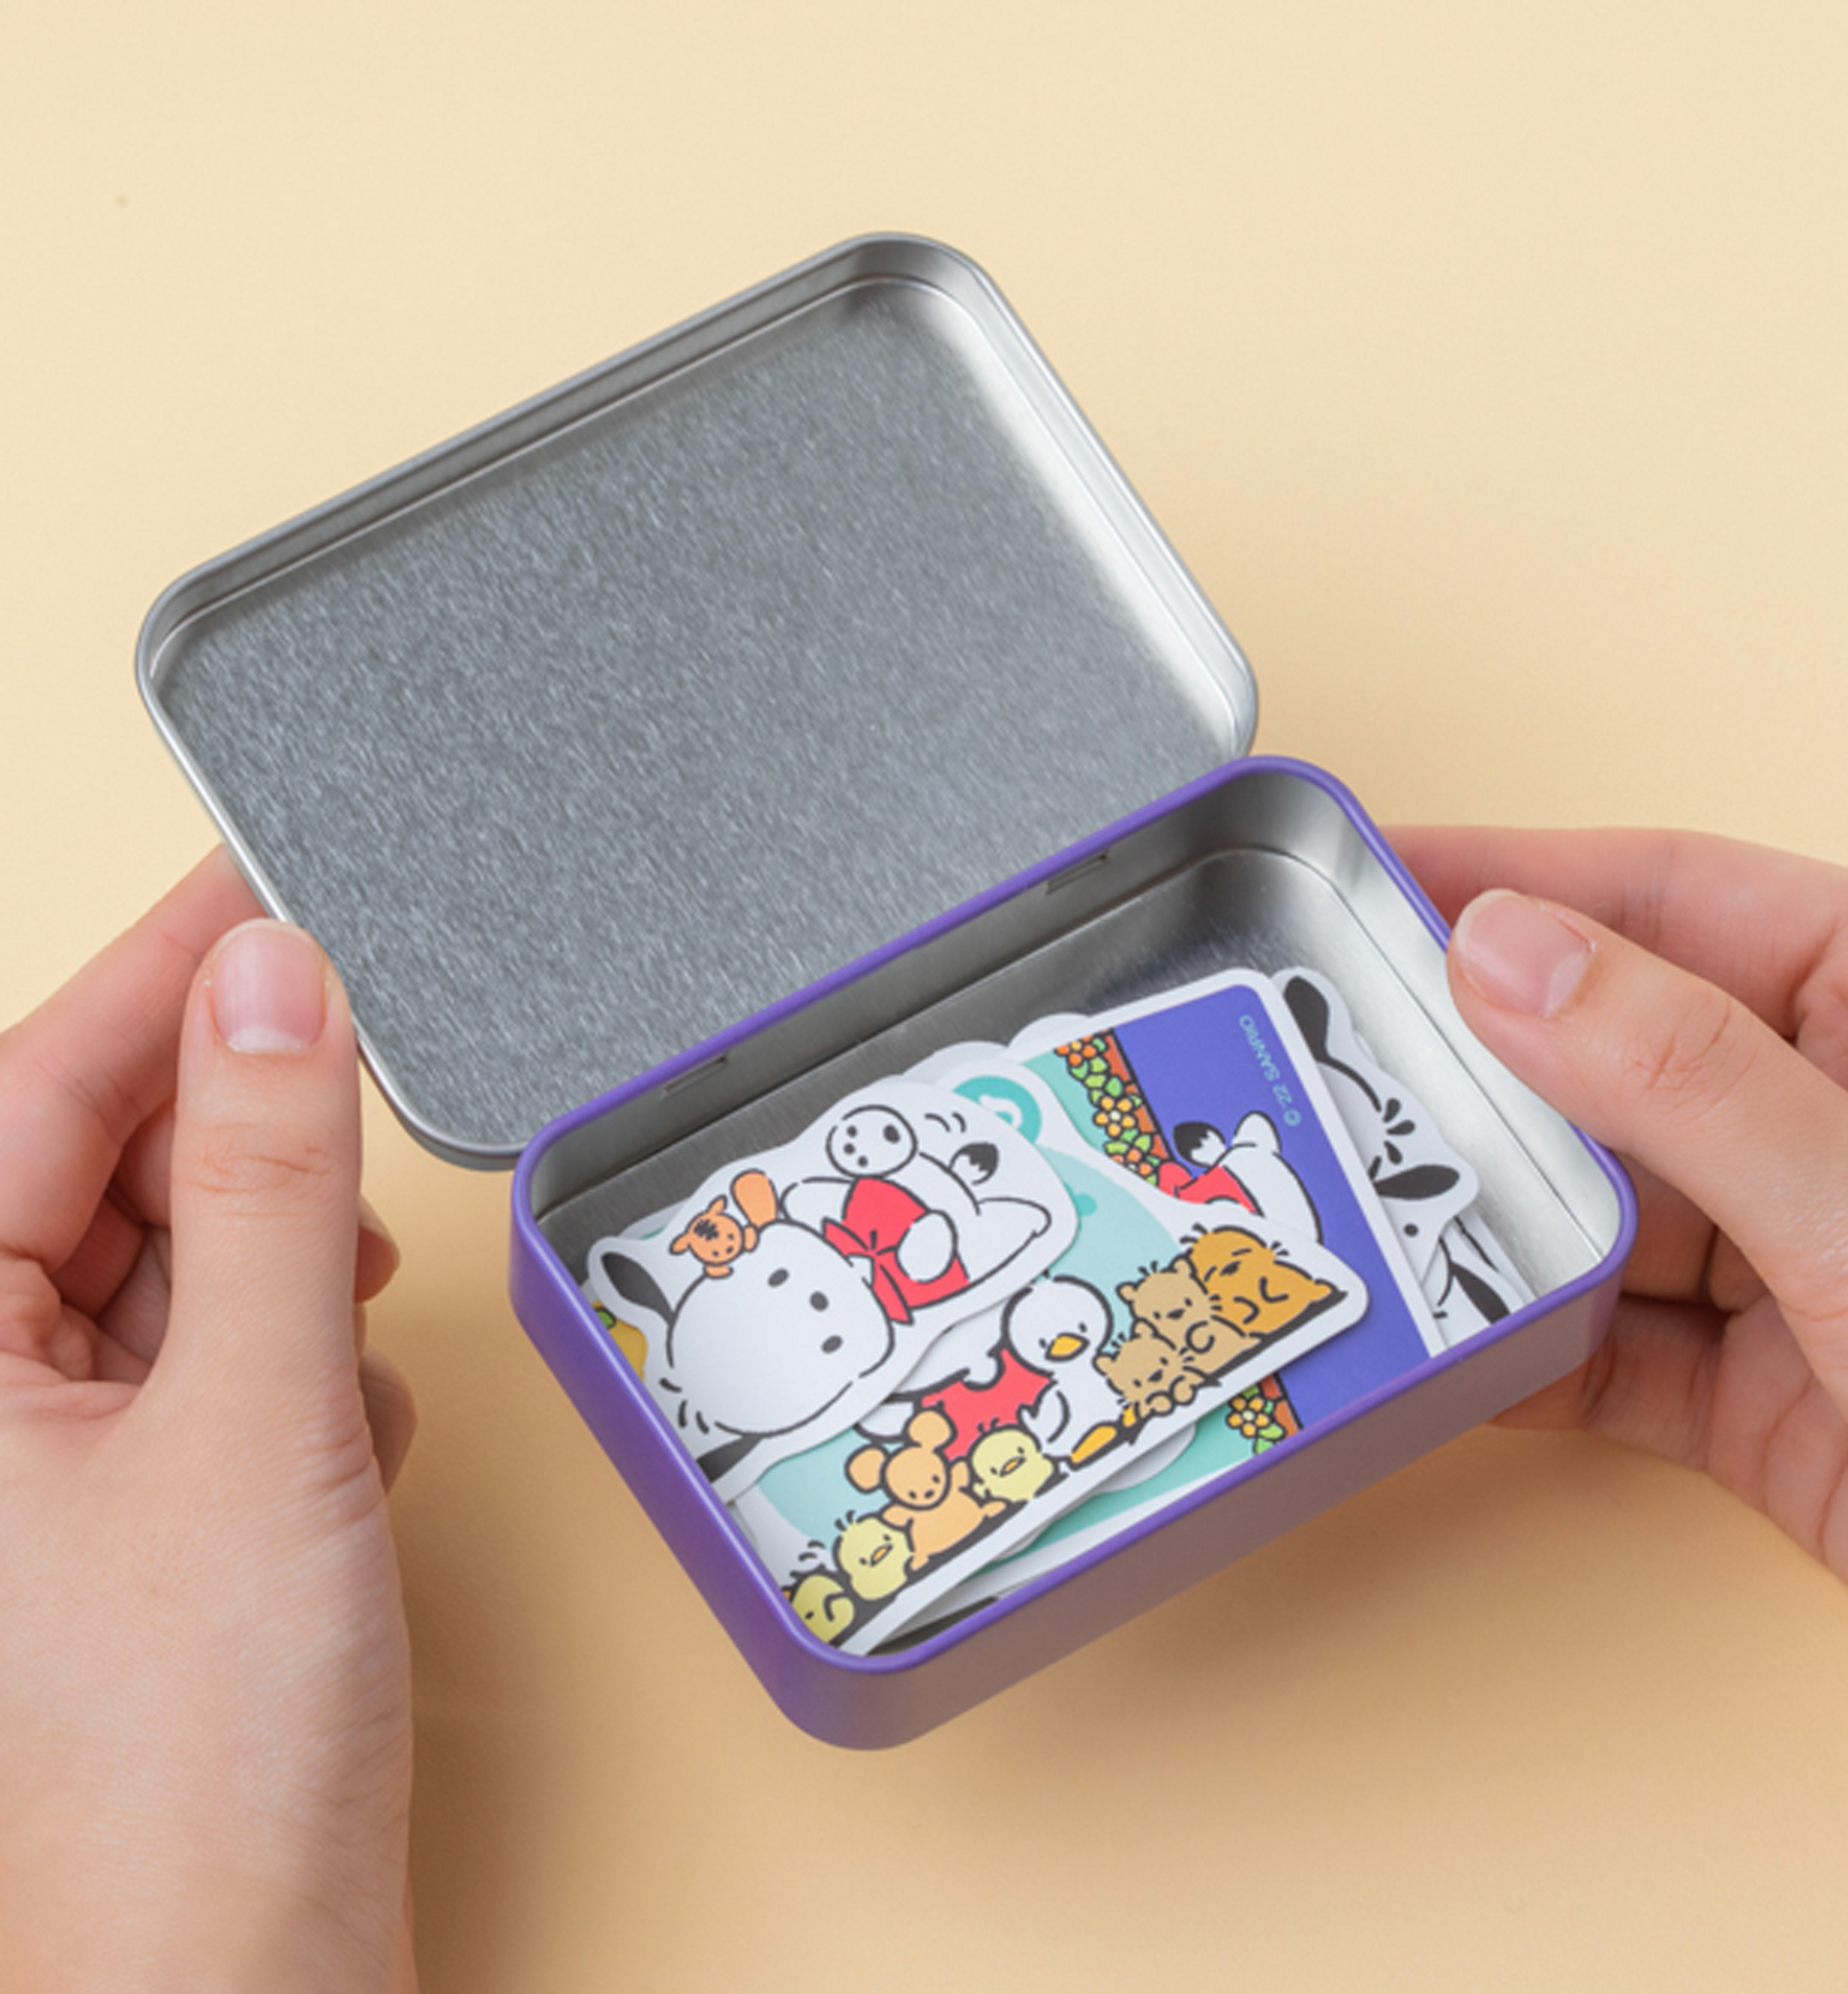 Sanrio Tin Case Sticker Pack [40 Stickers]